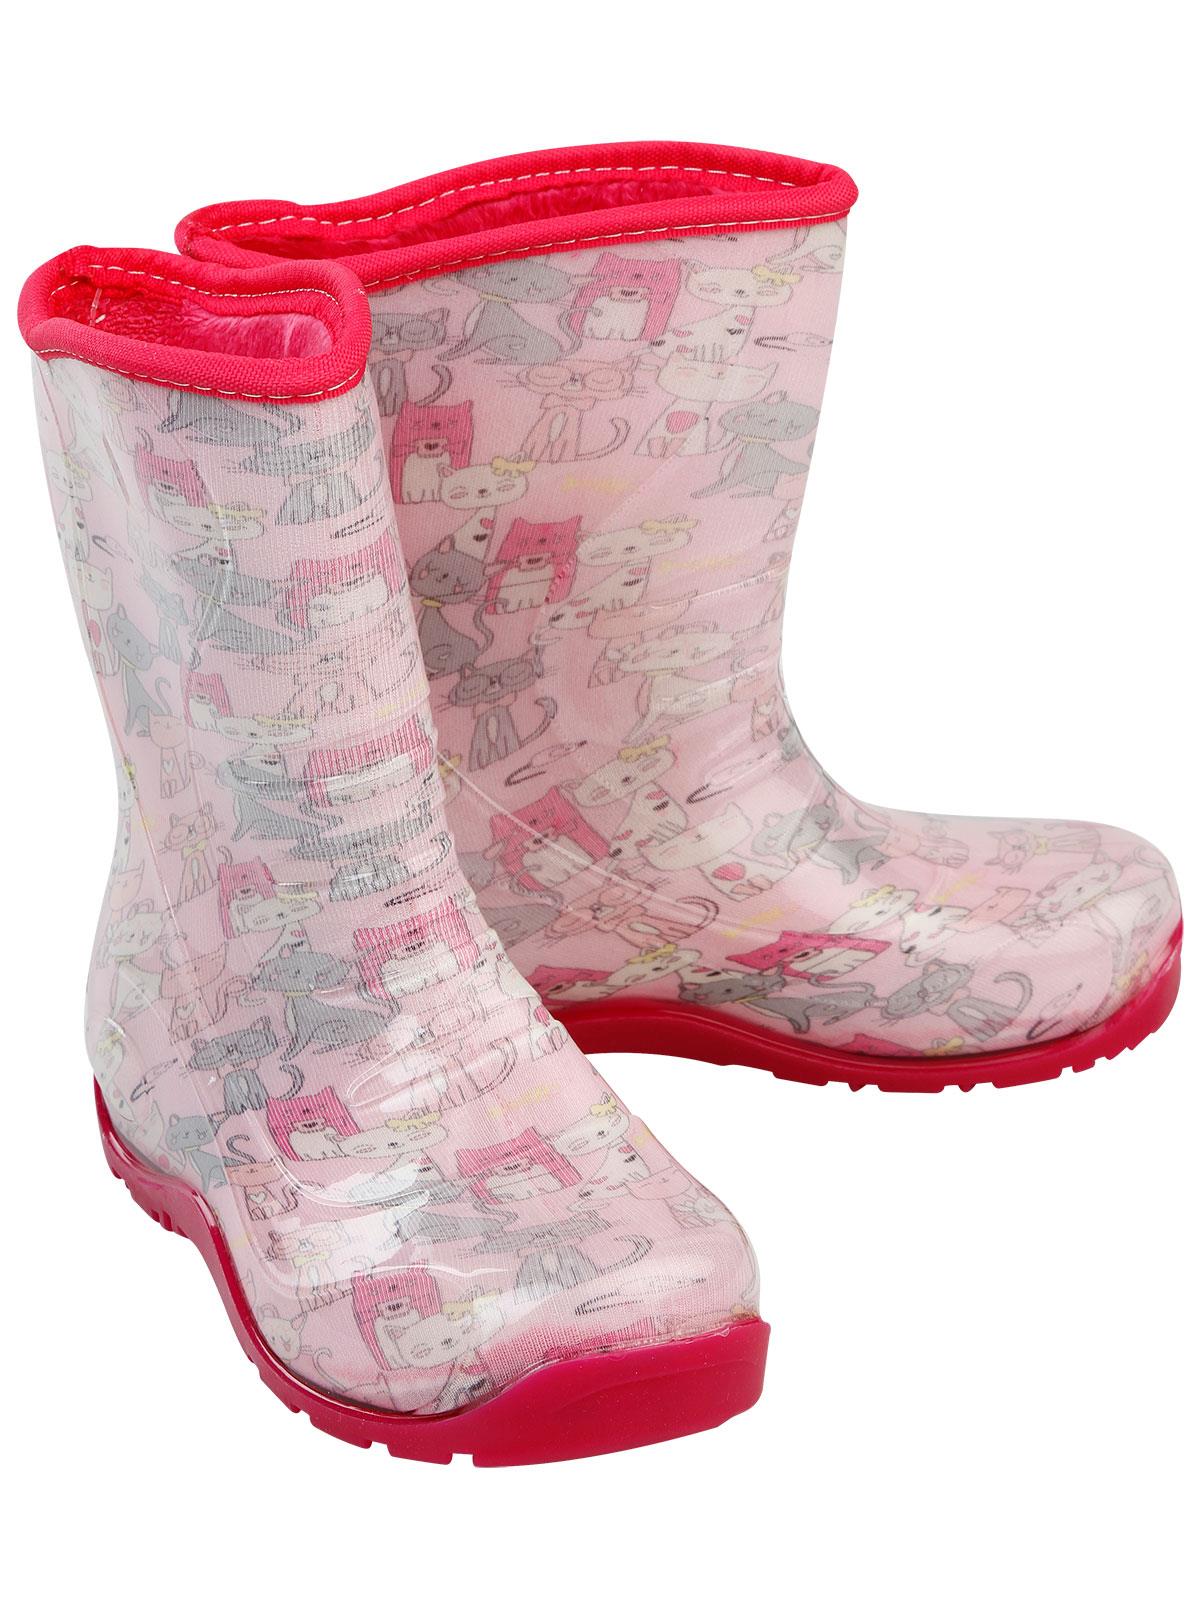 Boots Kız Çocuk Kedi Baskılı Yağmur Çizmesi 30-34 Numara Pembe